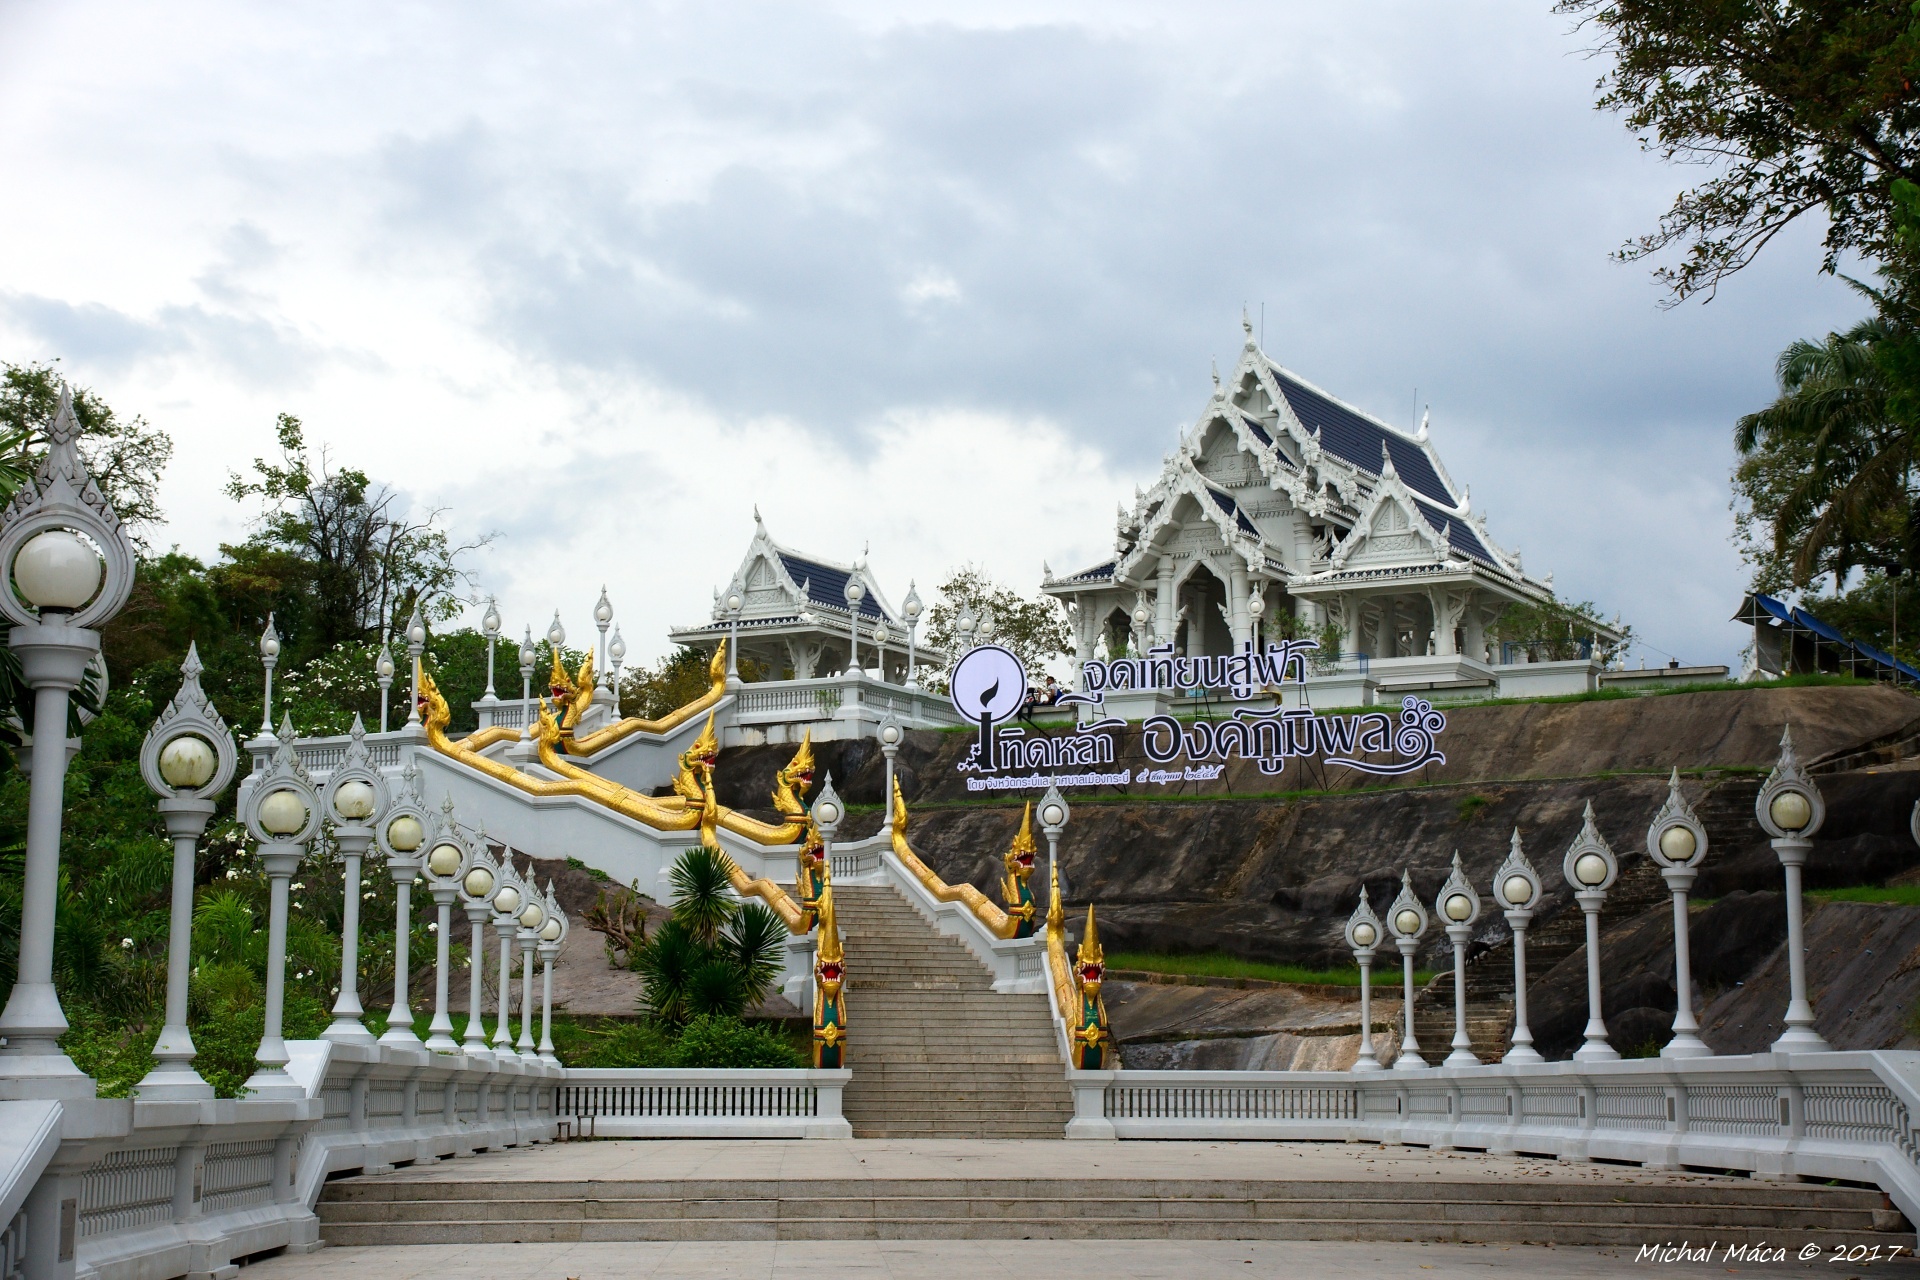 Wat Kaew Korawaram